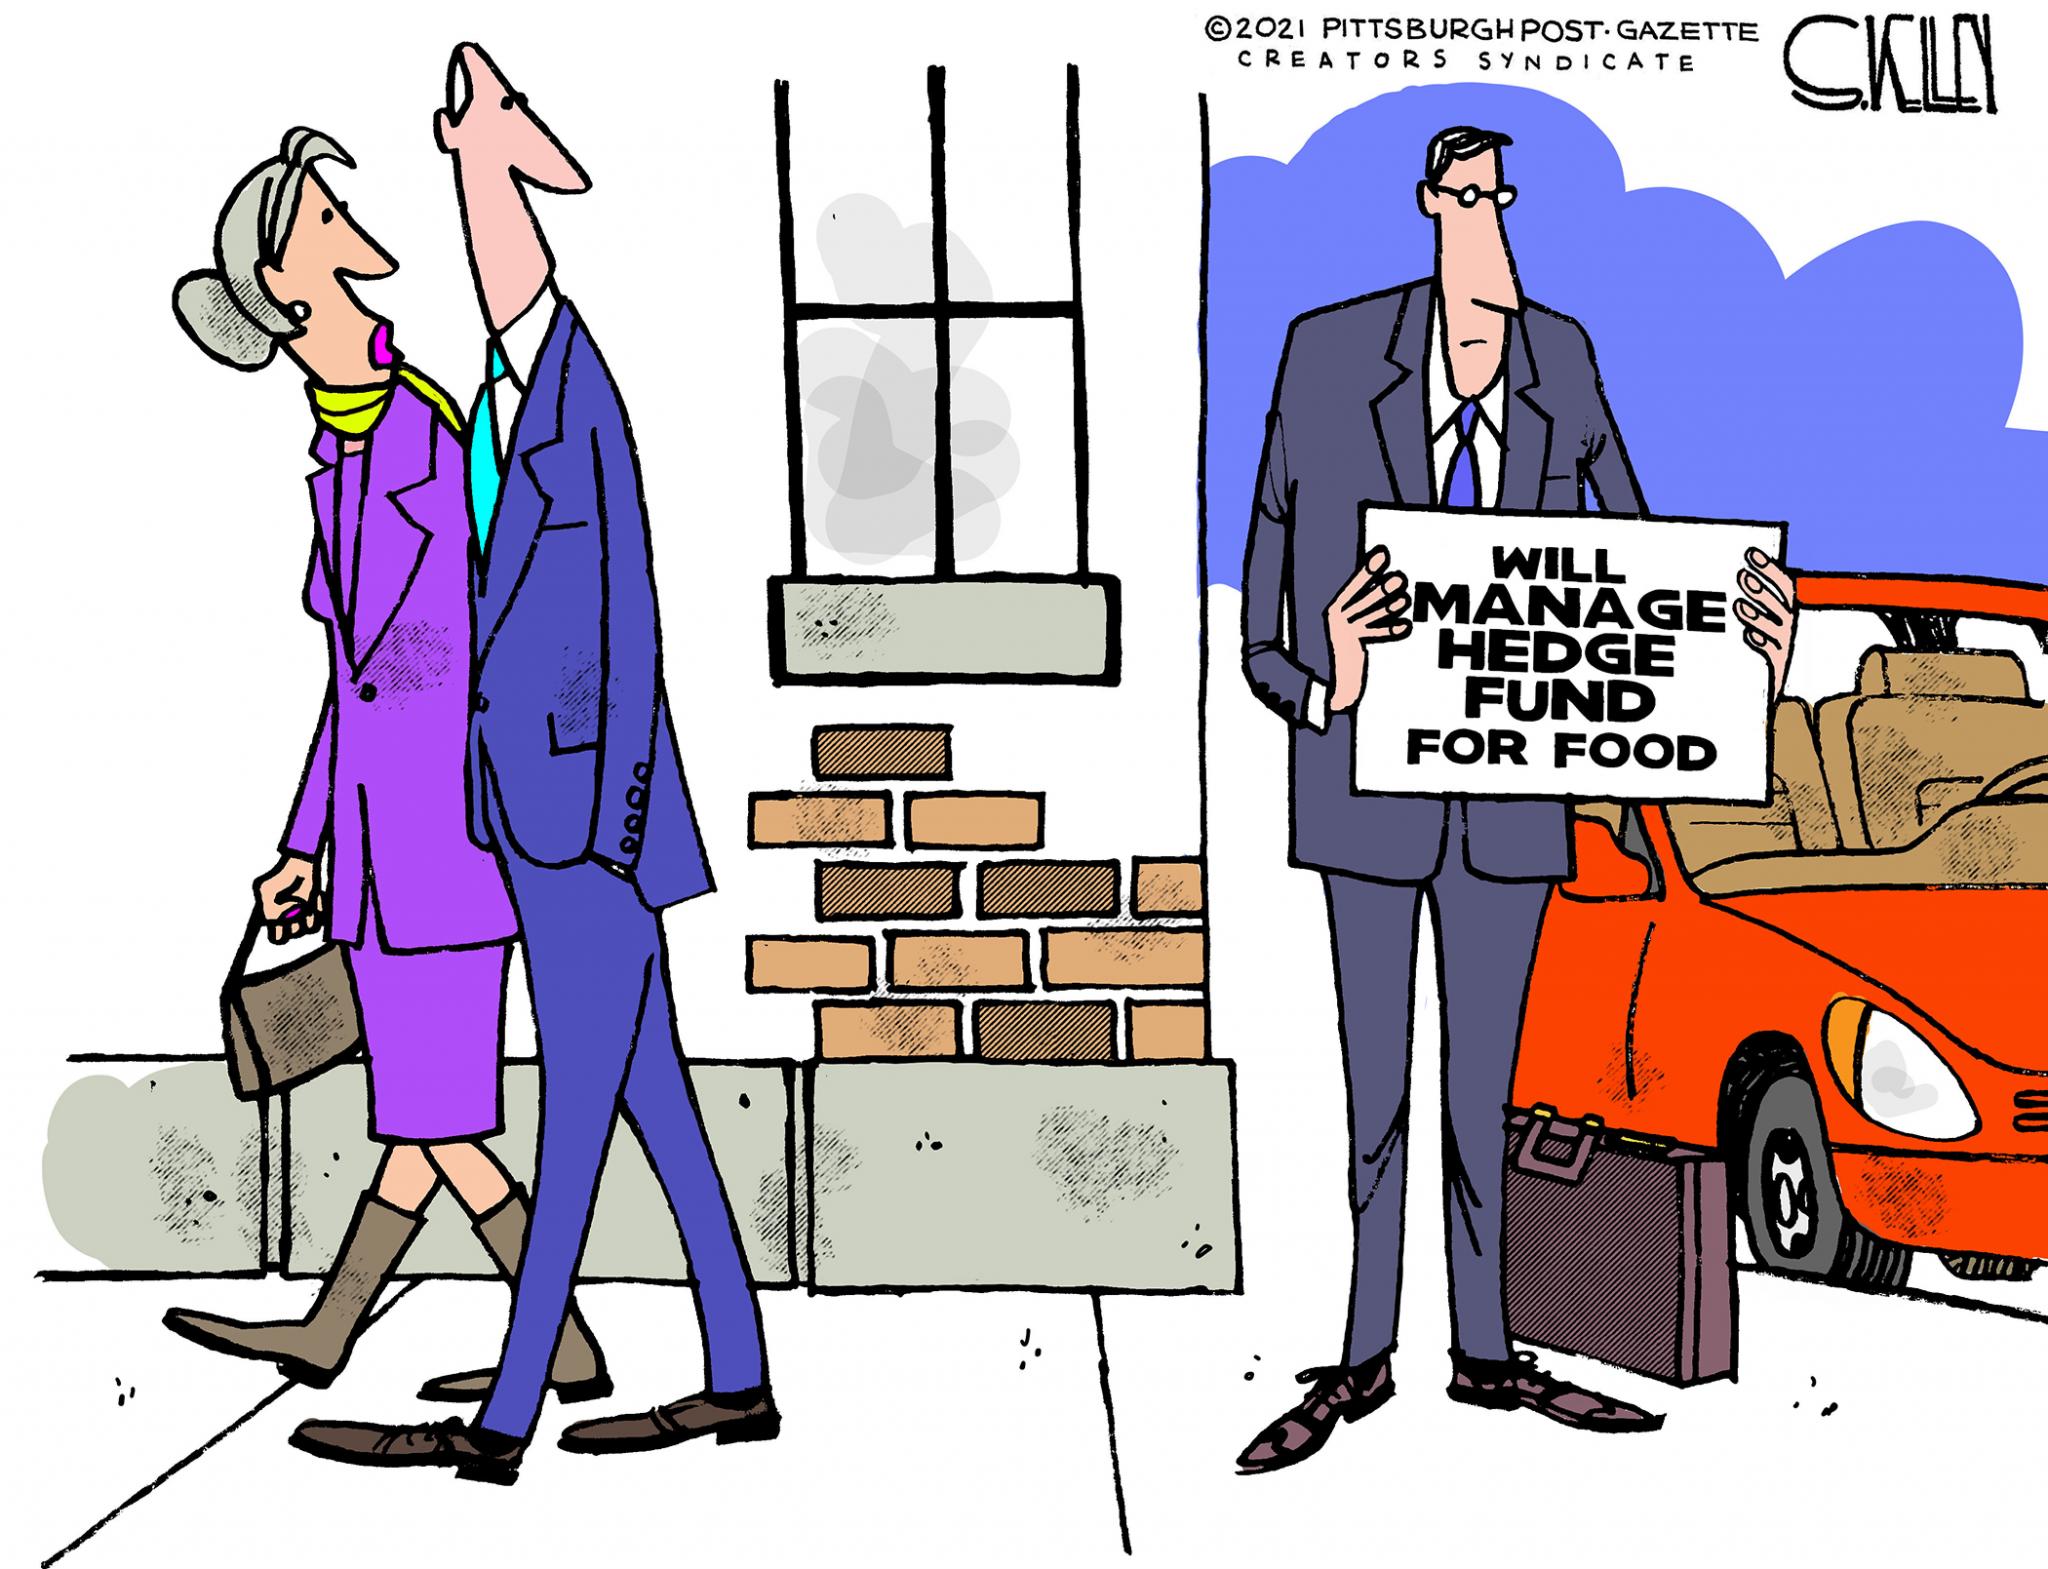 Political cartoons - the 'funny' pics thread.-sk013121dapr-jpg